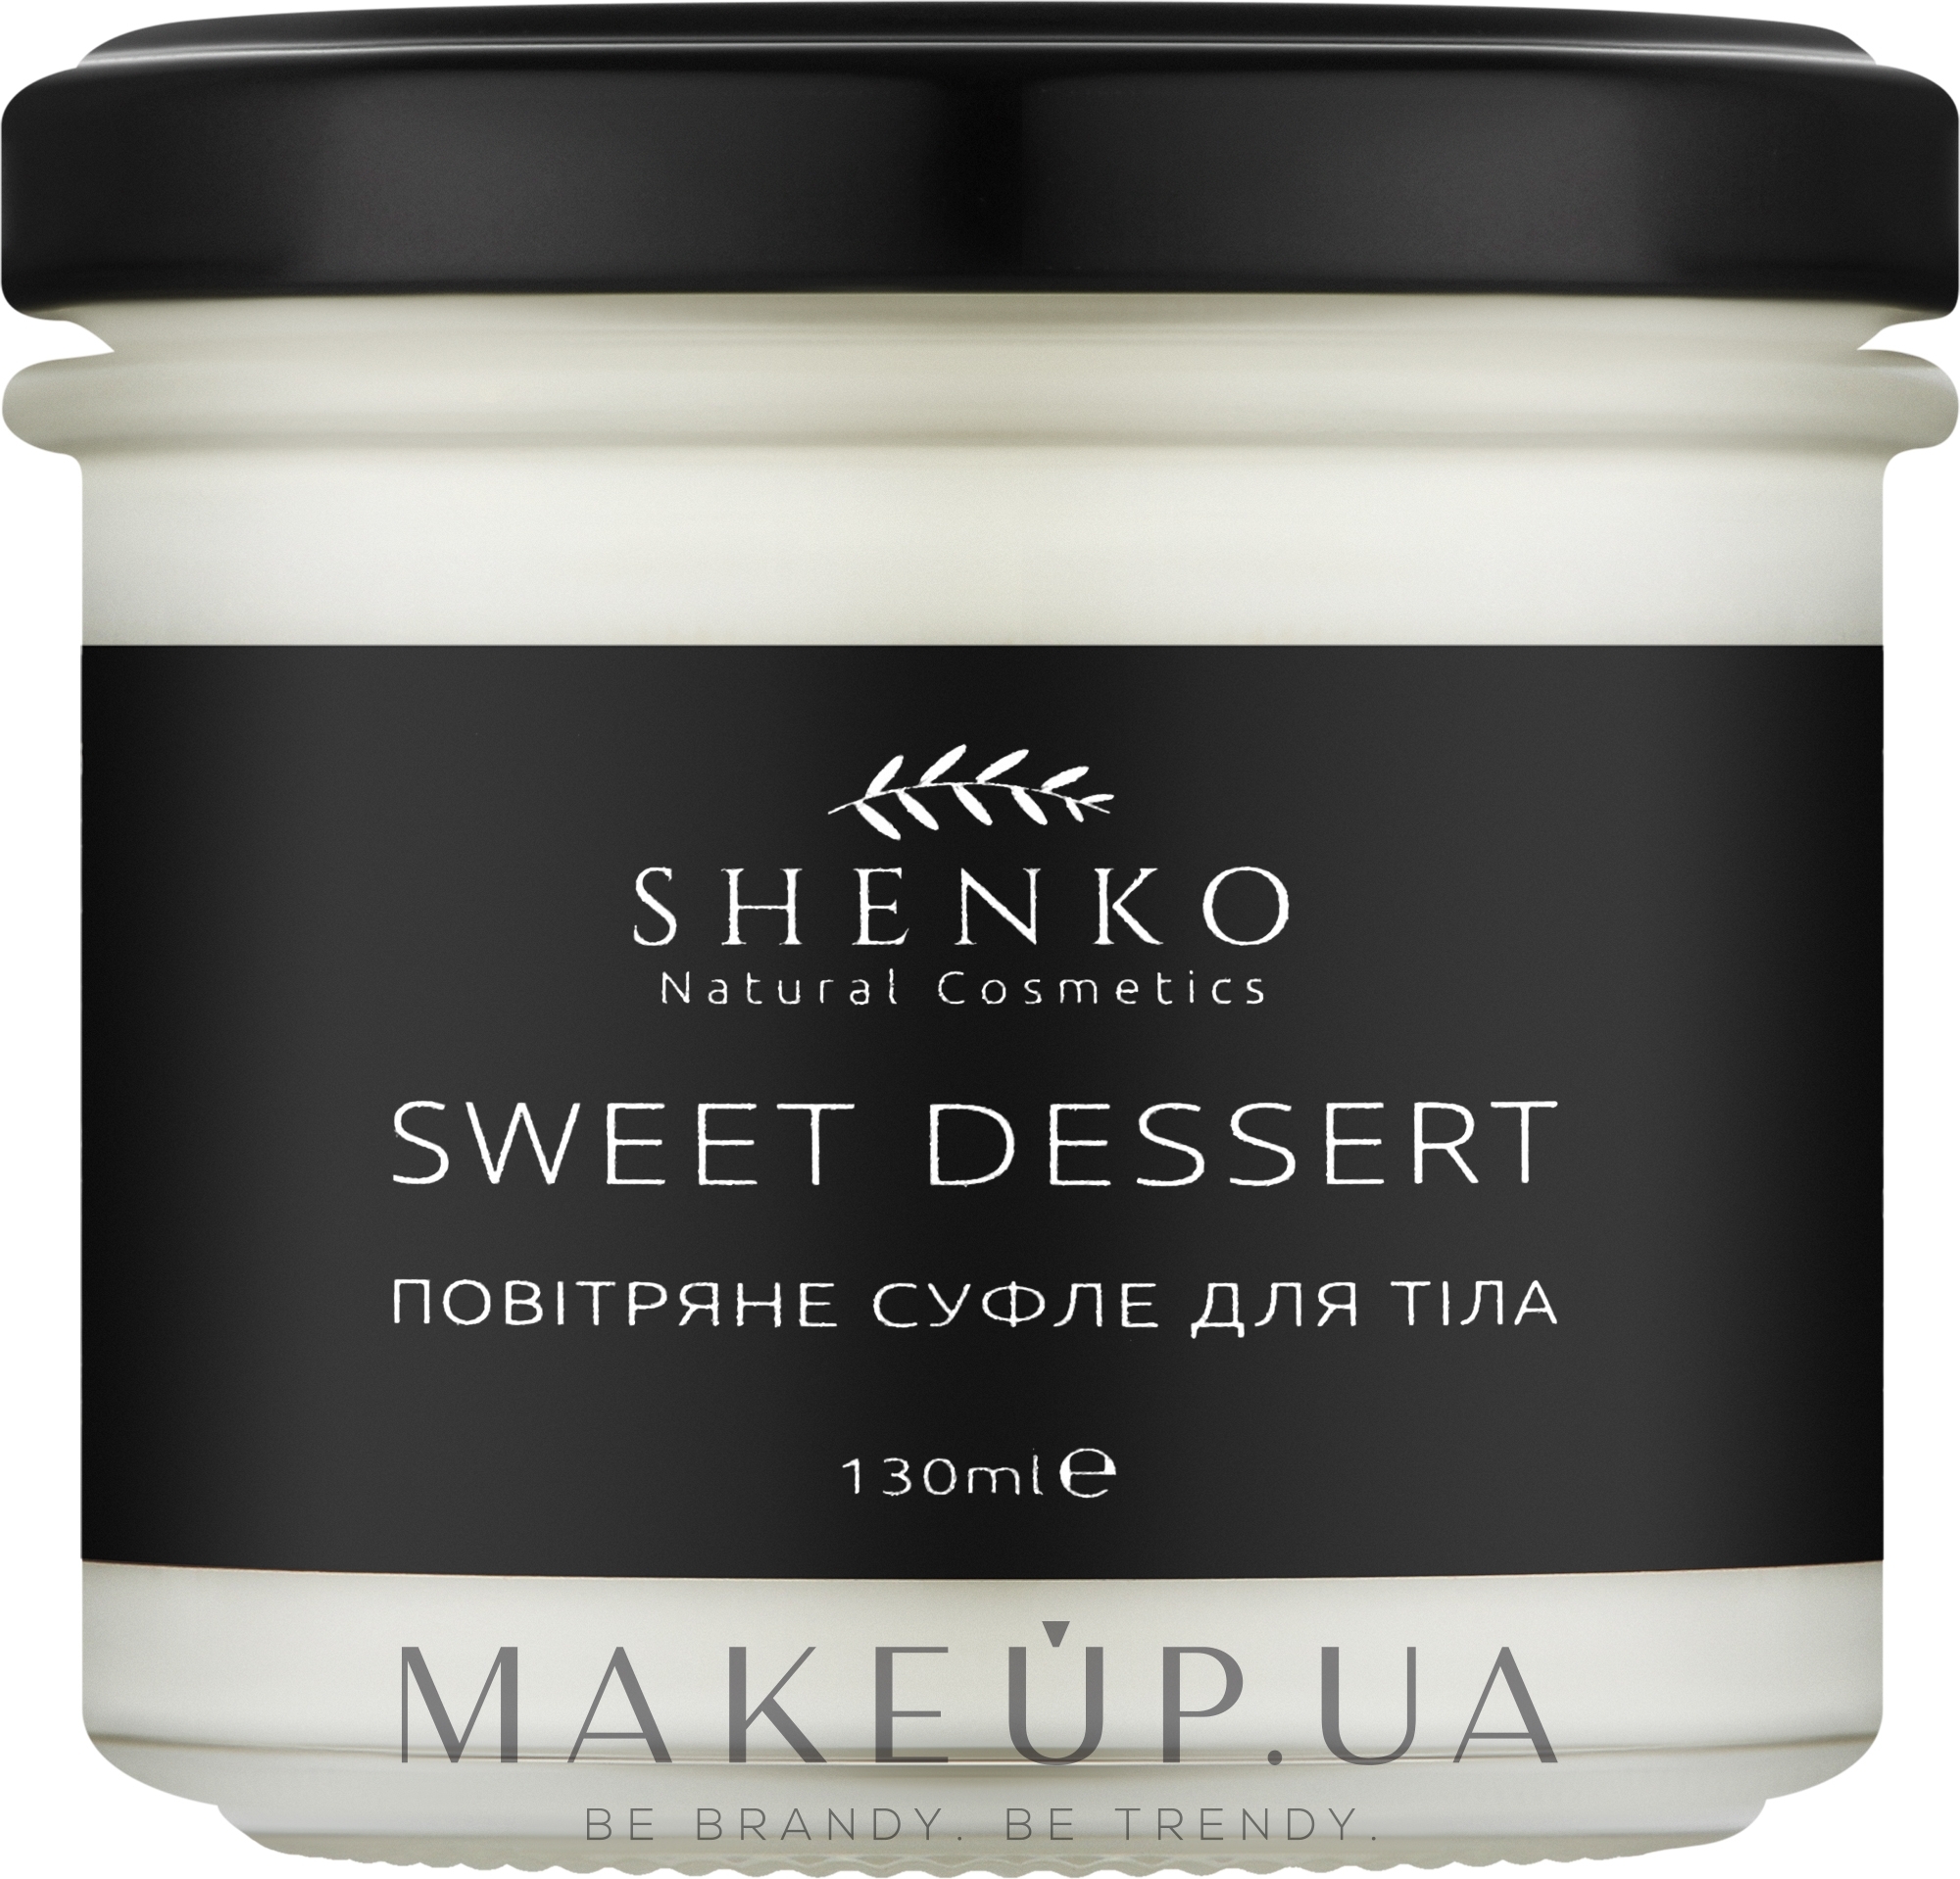 Повітряне суфле для тіла - Shenko Sweet Dessert Souffle — фото 130ml